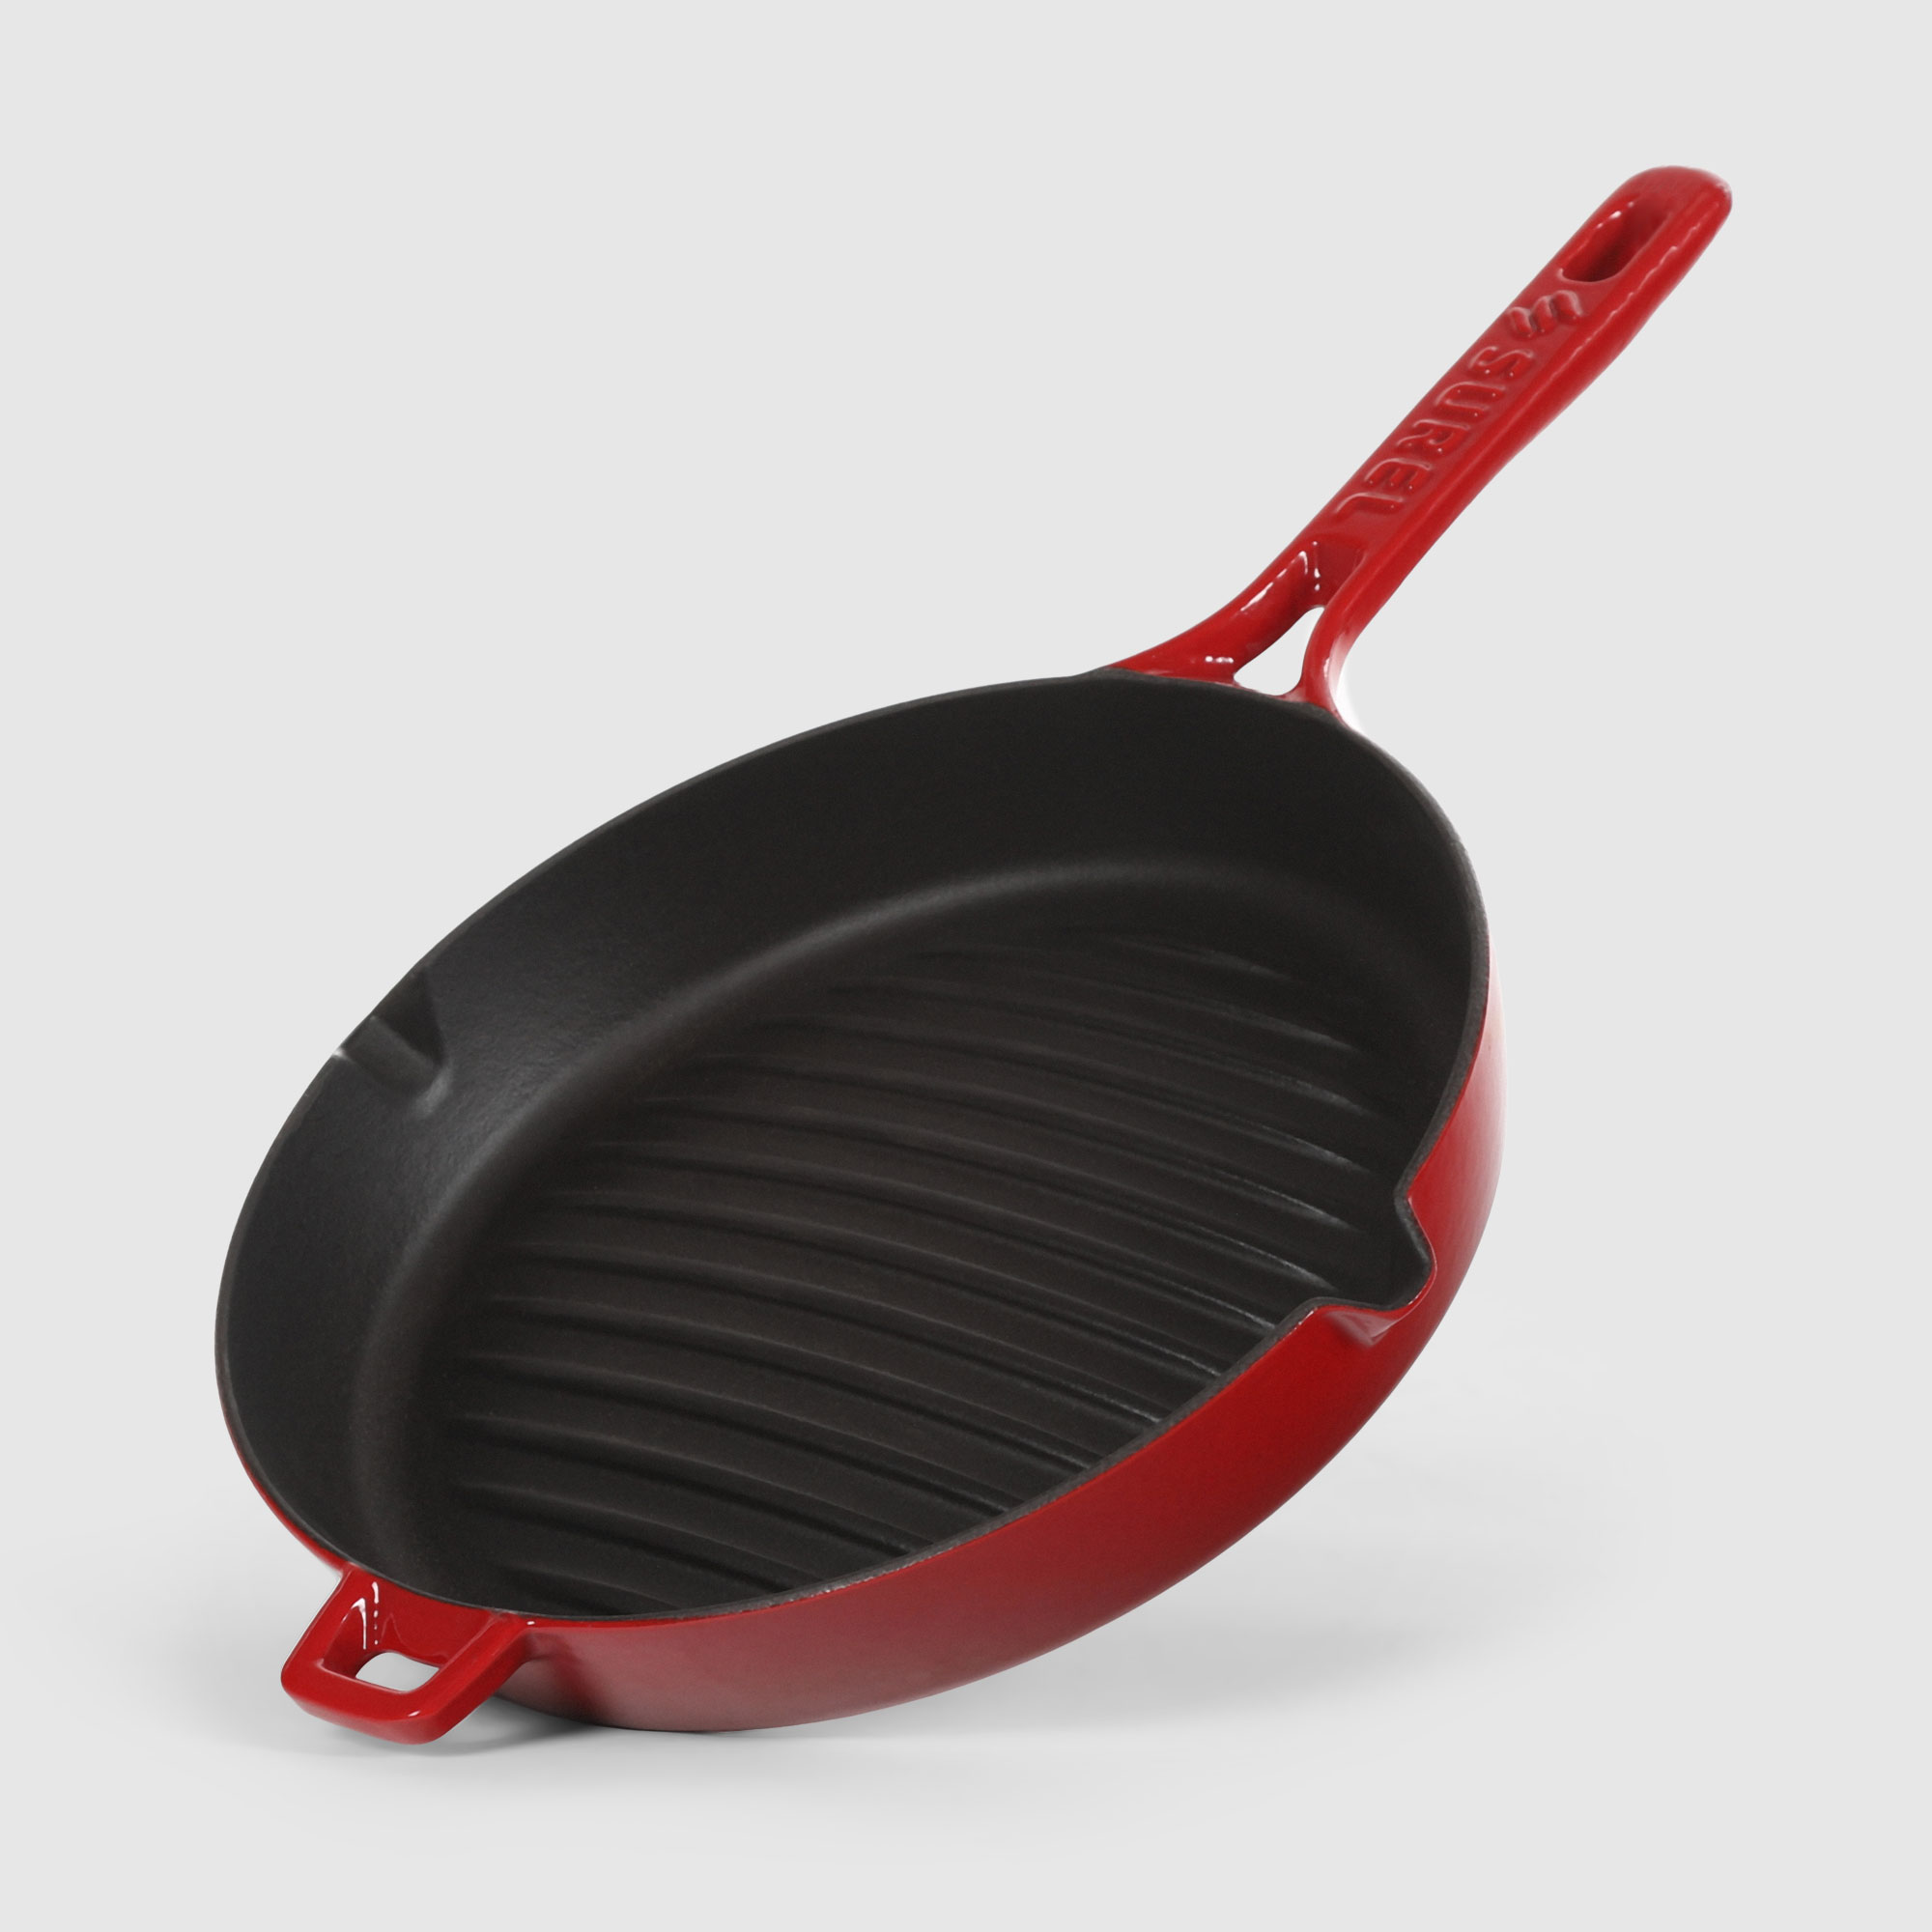 Сковорода-гриль Surel Convex 26 см красная сковорода гриль литая 26см съемная ручка доломит